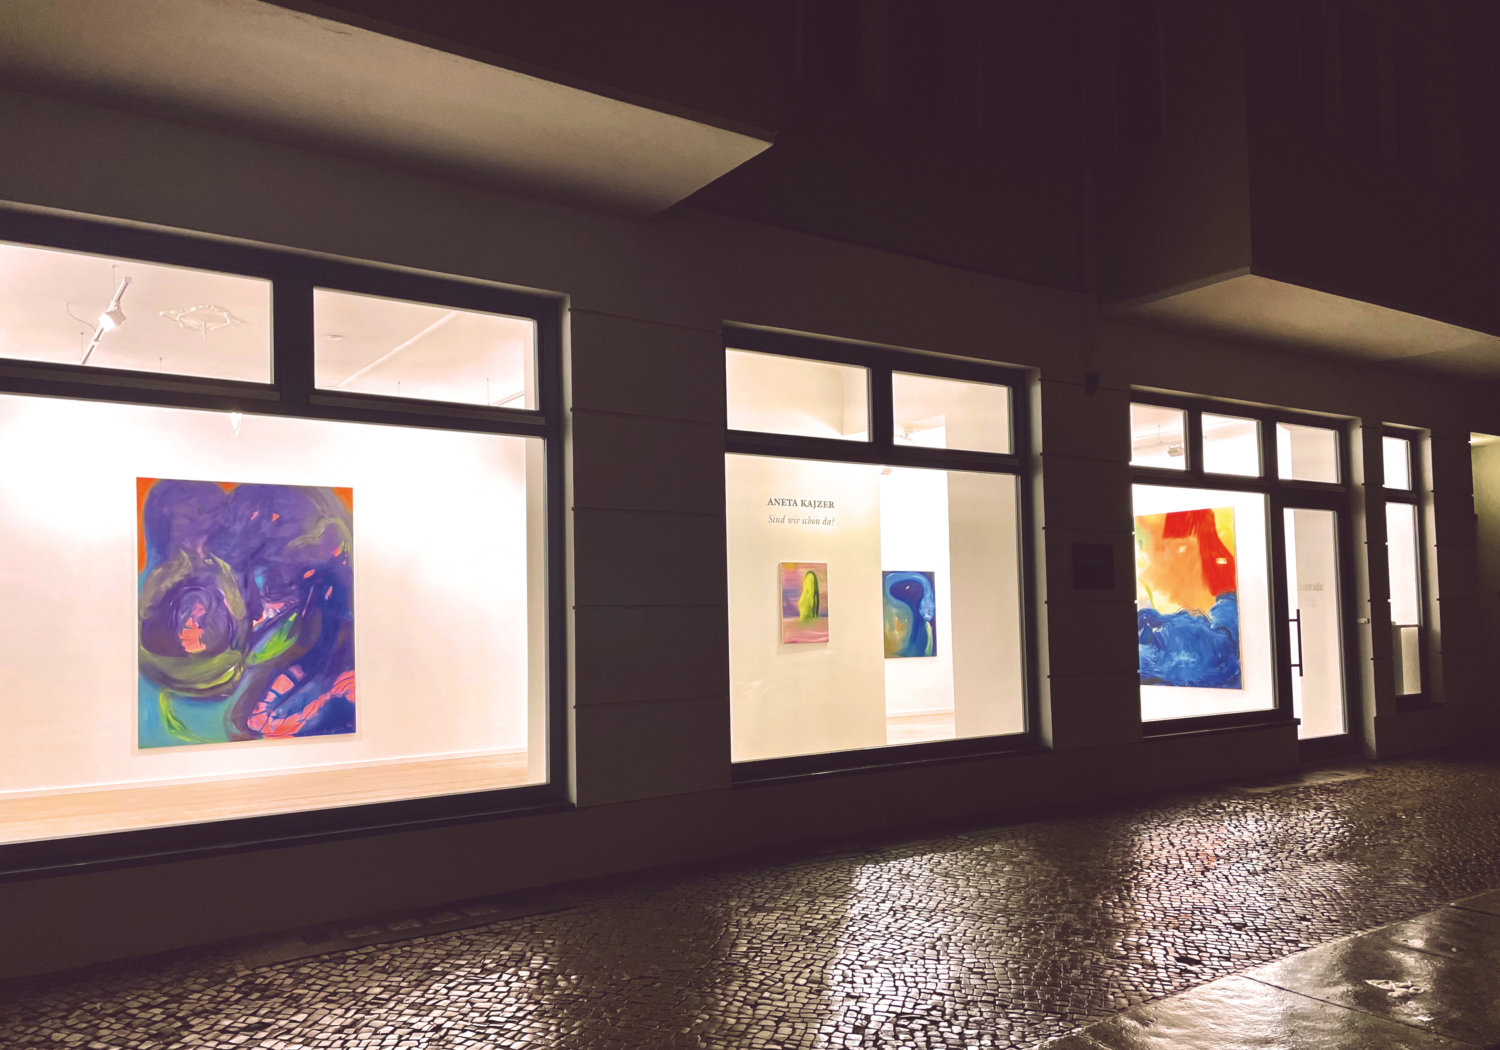 Außenansicht der Galerie Conrads mit Blick in die Ausstellung "Sind wir schon da?" von Aneta Kajzer, draußen ist es dunkel, der Ausstellungsraum hell erleuchtet